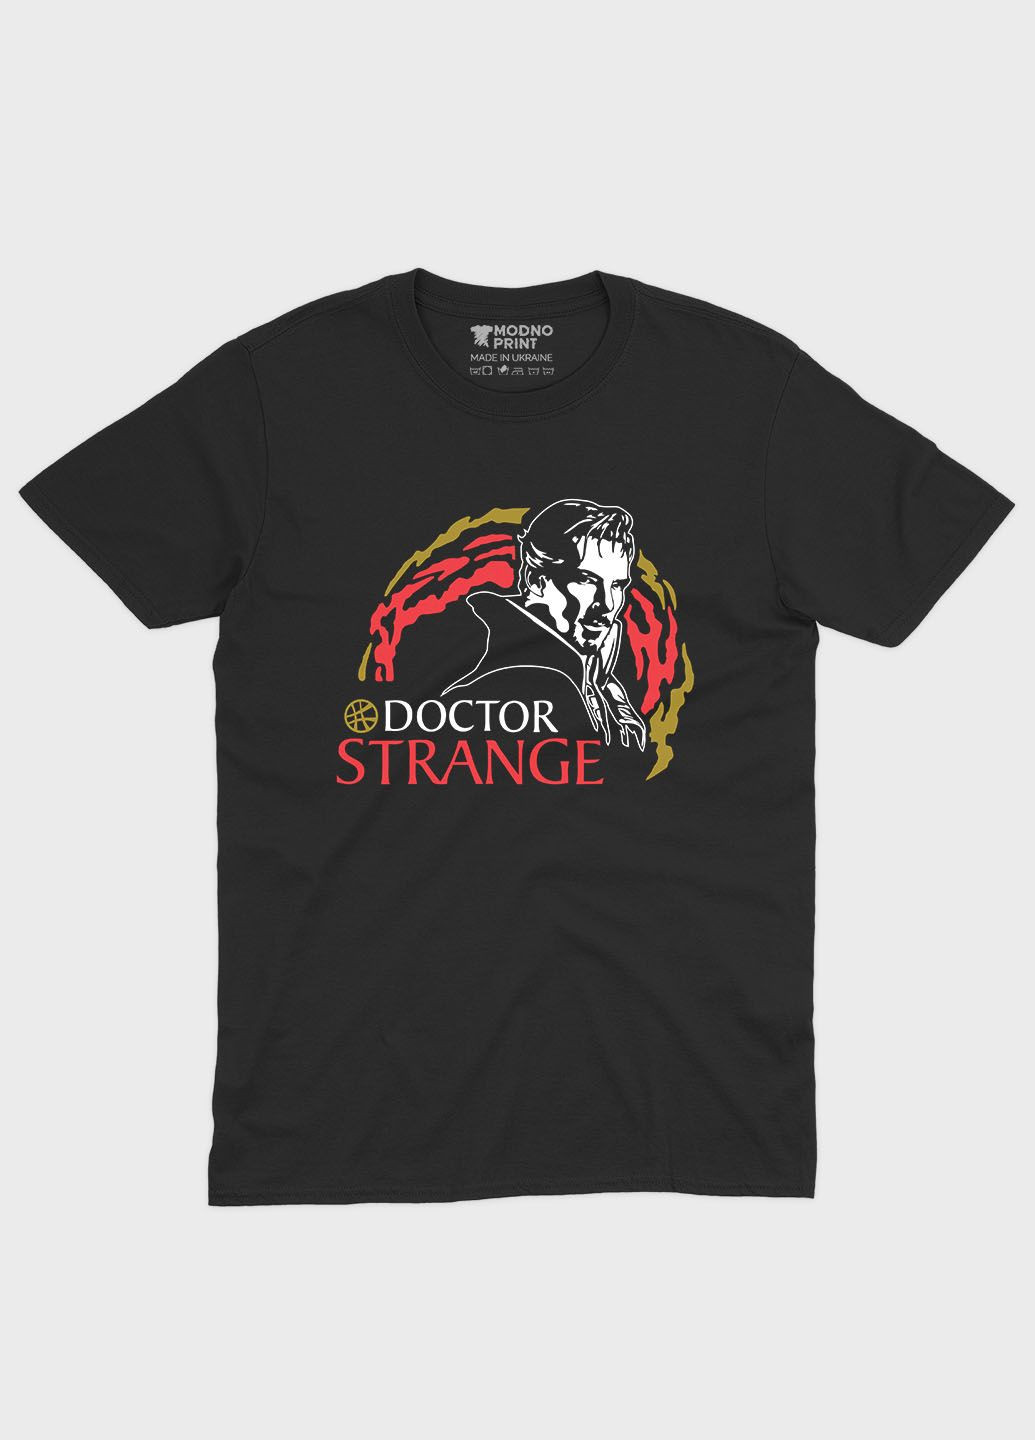 Черная демисезонная футболка для девочки с принтом супергероя - доктор стрэндж (ts001-1-gl-006-020-002-g) Modno